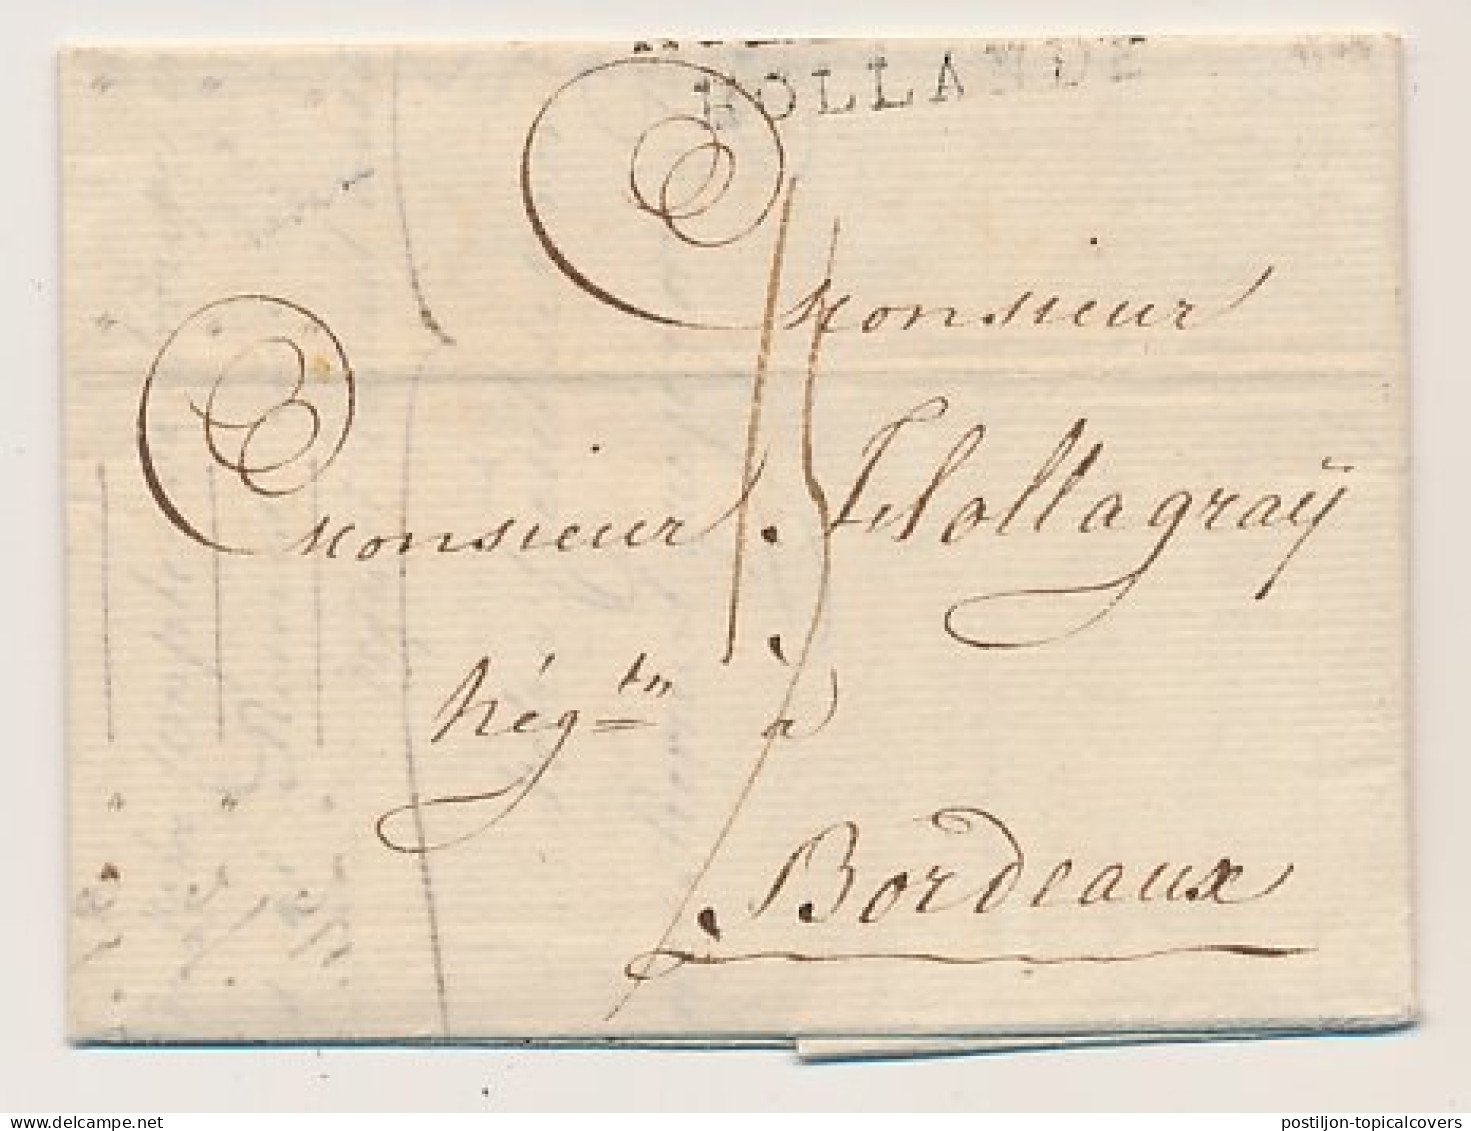 Rotterdam - Bordeaux Frankrijk 1802 - Hollande - ...-1852 Voorlopers